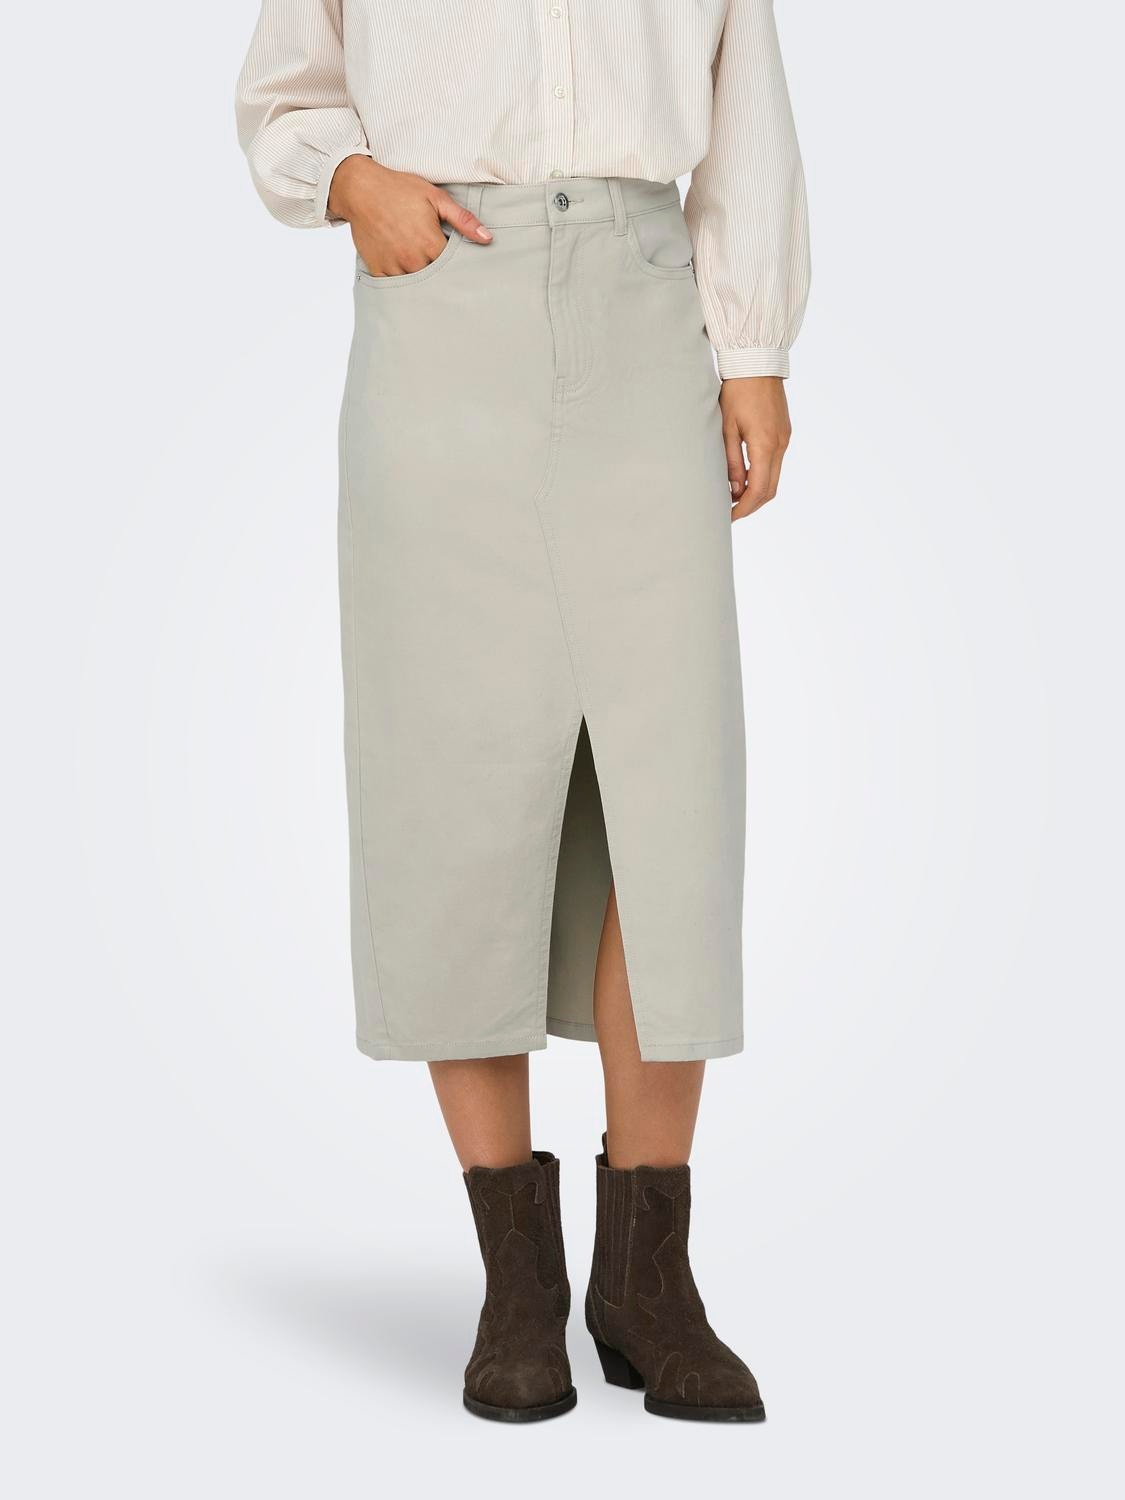 ONLY High waist Long skirt -Silver Lining - 15318146